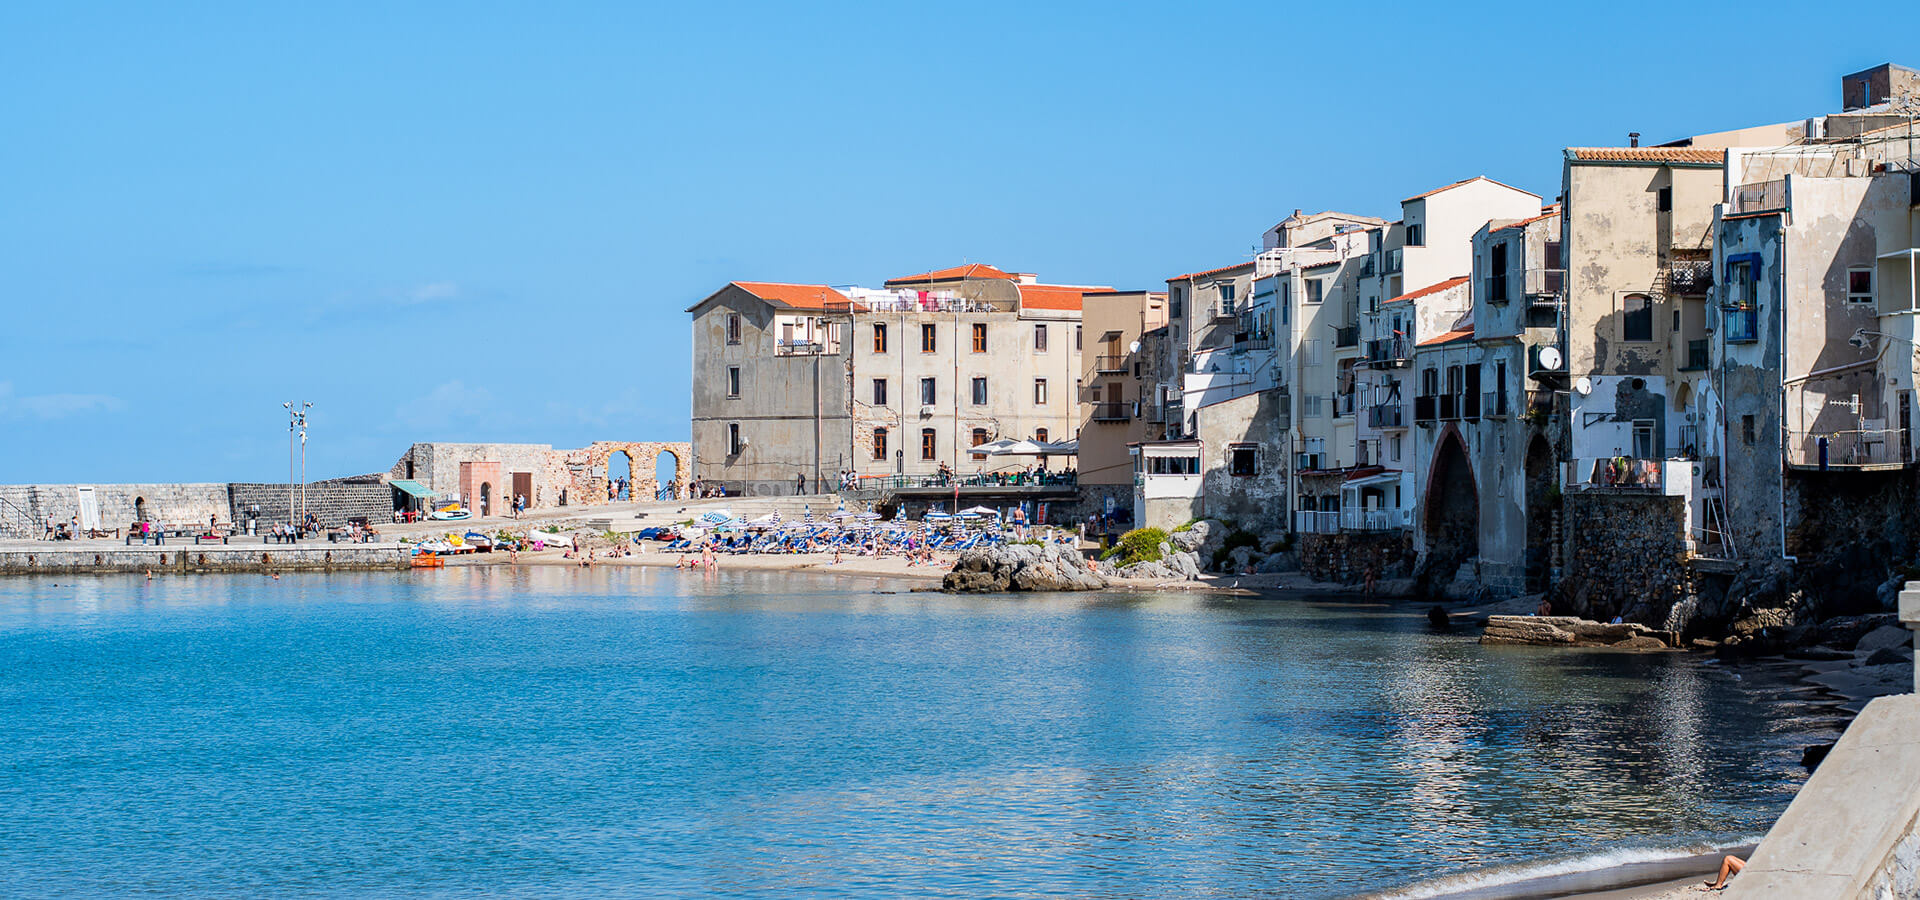 Qué ver en Cefalú, la localidad más bonita de Sicilia